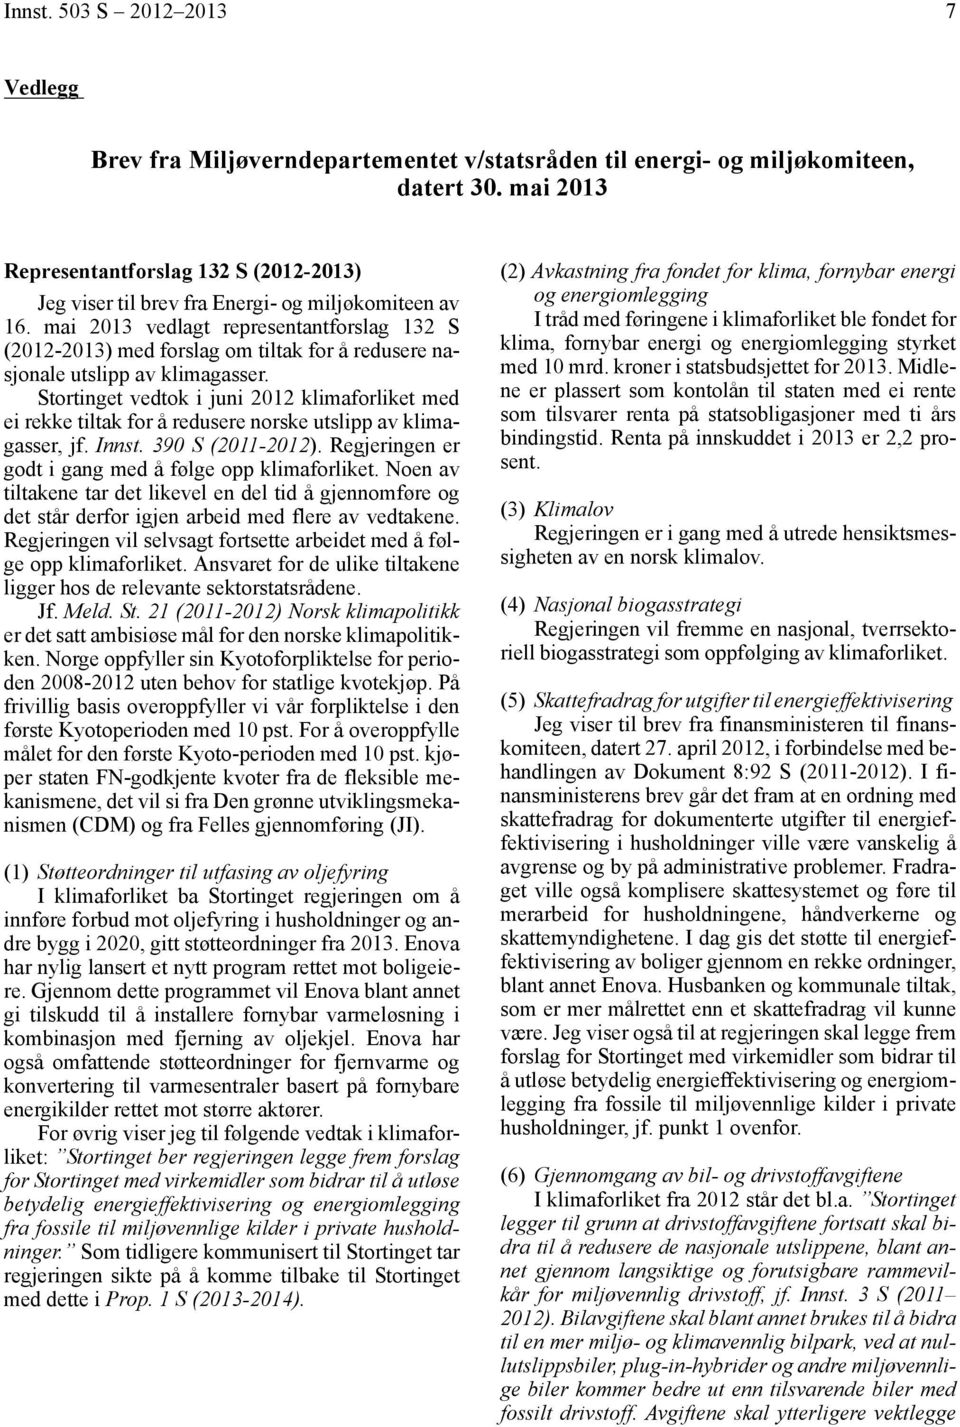 mai 2013 vedlagt representantforslag 132 S (2012-2013) med forslag om tiltak for å redusere nasjonale utslipp av klimagasser.